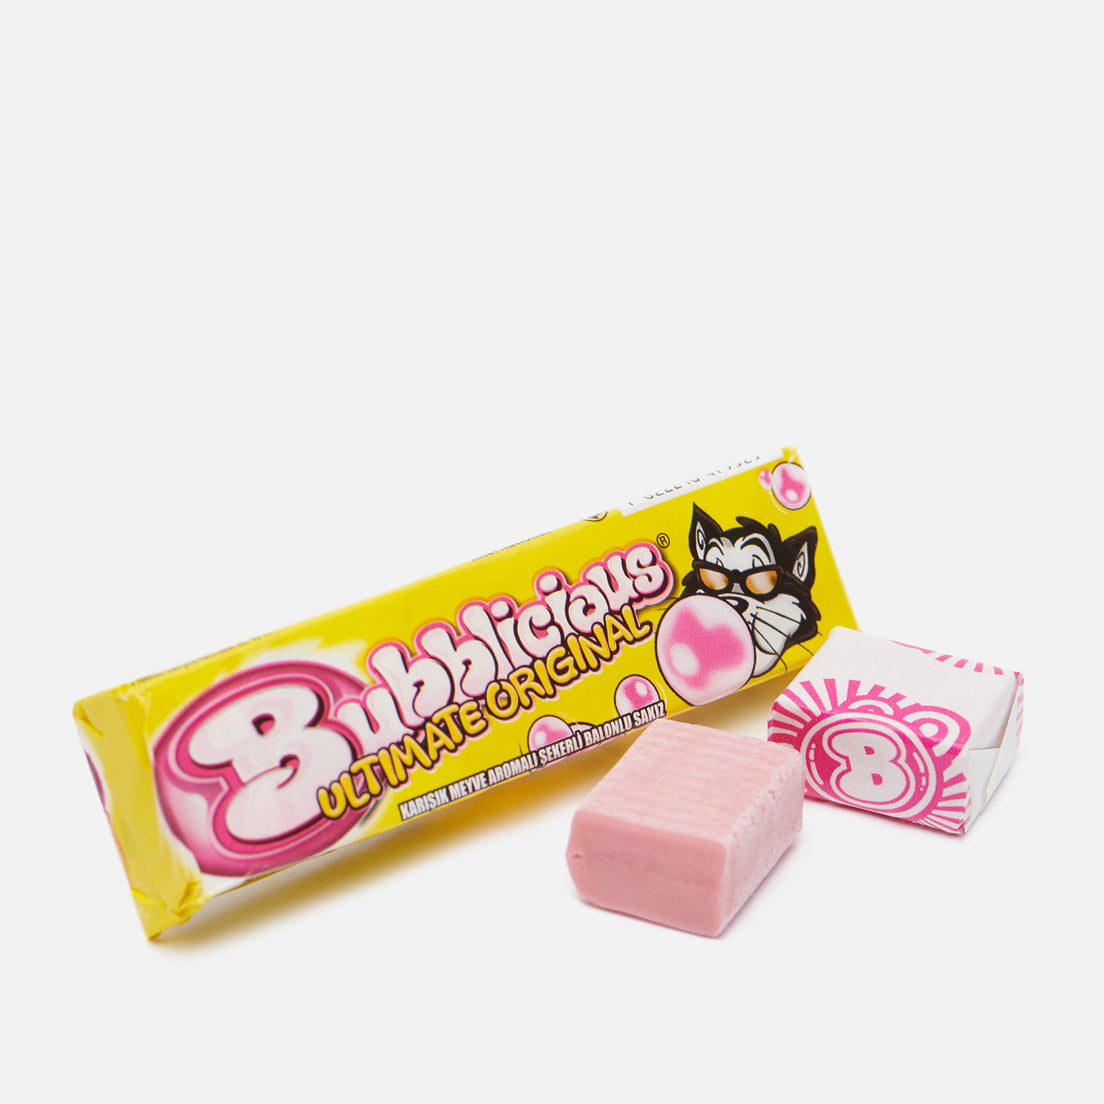 Un emballage jaune à écrits roses avec un chat à lunette de soleil et devant 2 chewing-gums dont un déballé qui nous dévoile sa couleur rose. Le tout sur fond blanc